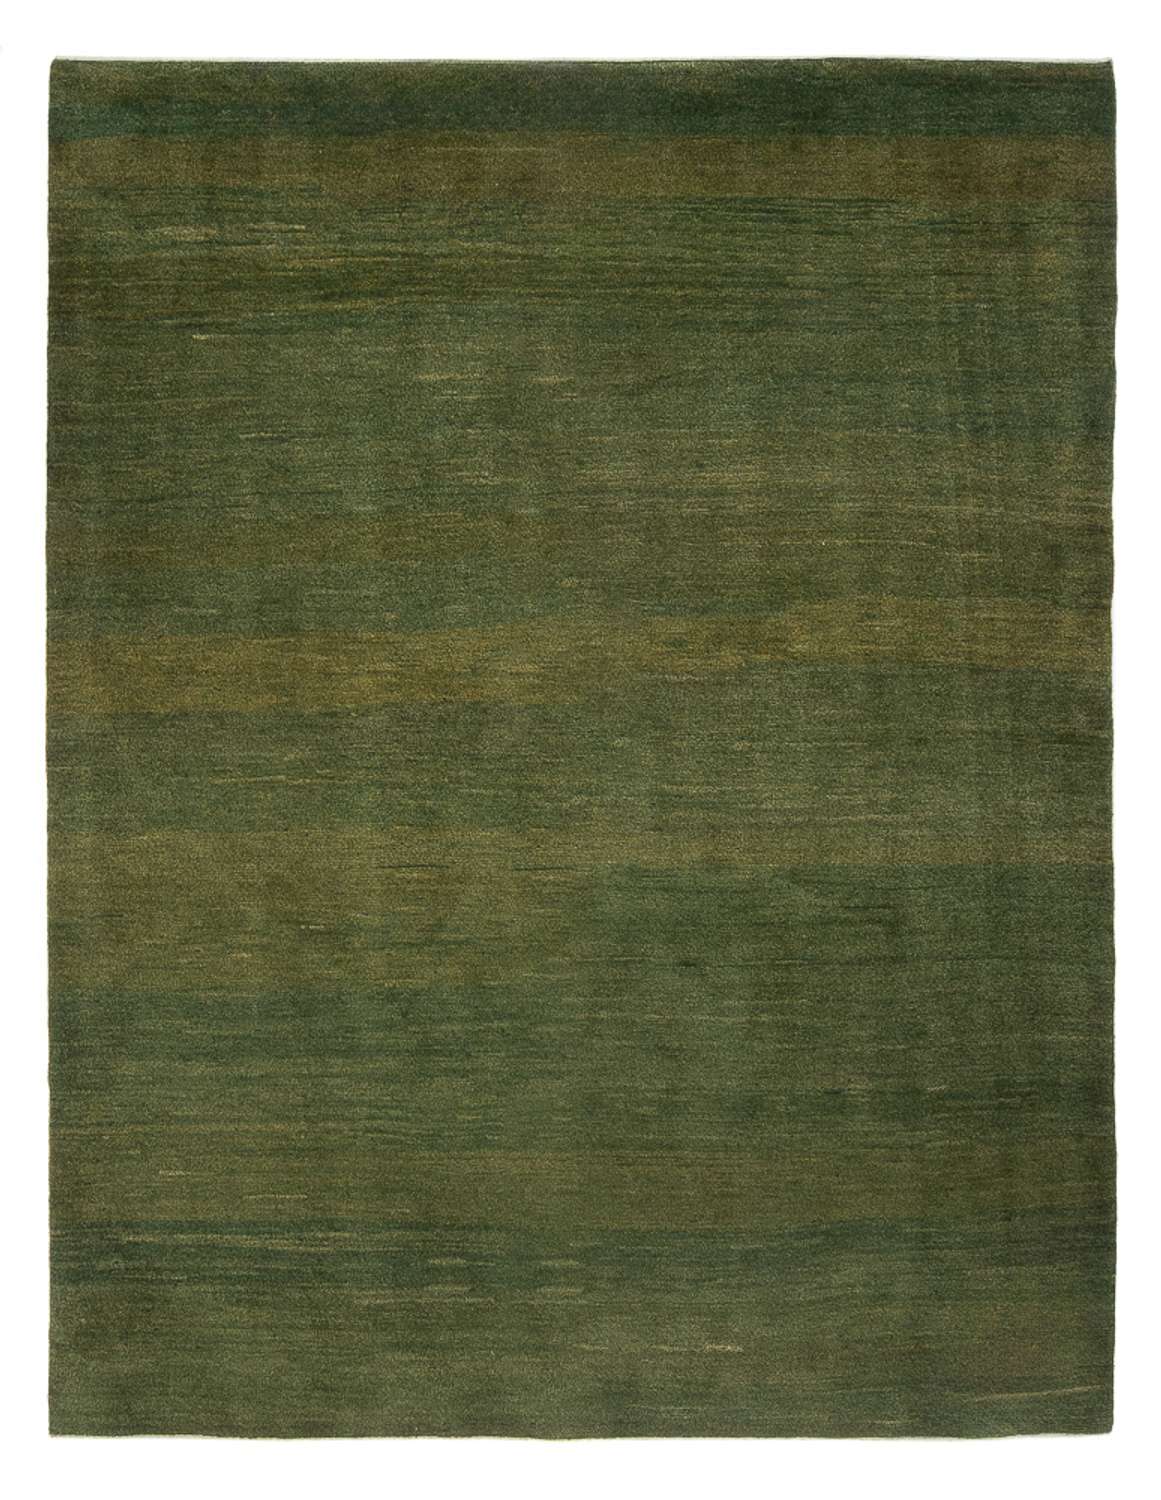 Gabbeh tapijt - Perzisch - 241 x 184 cm - veelkleurig